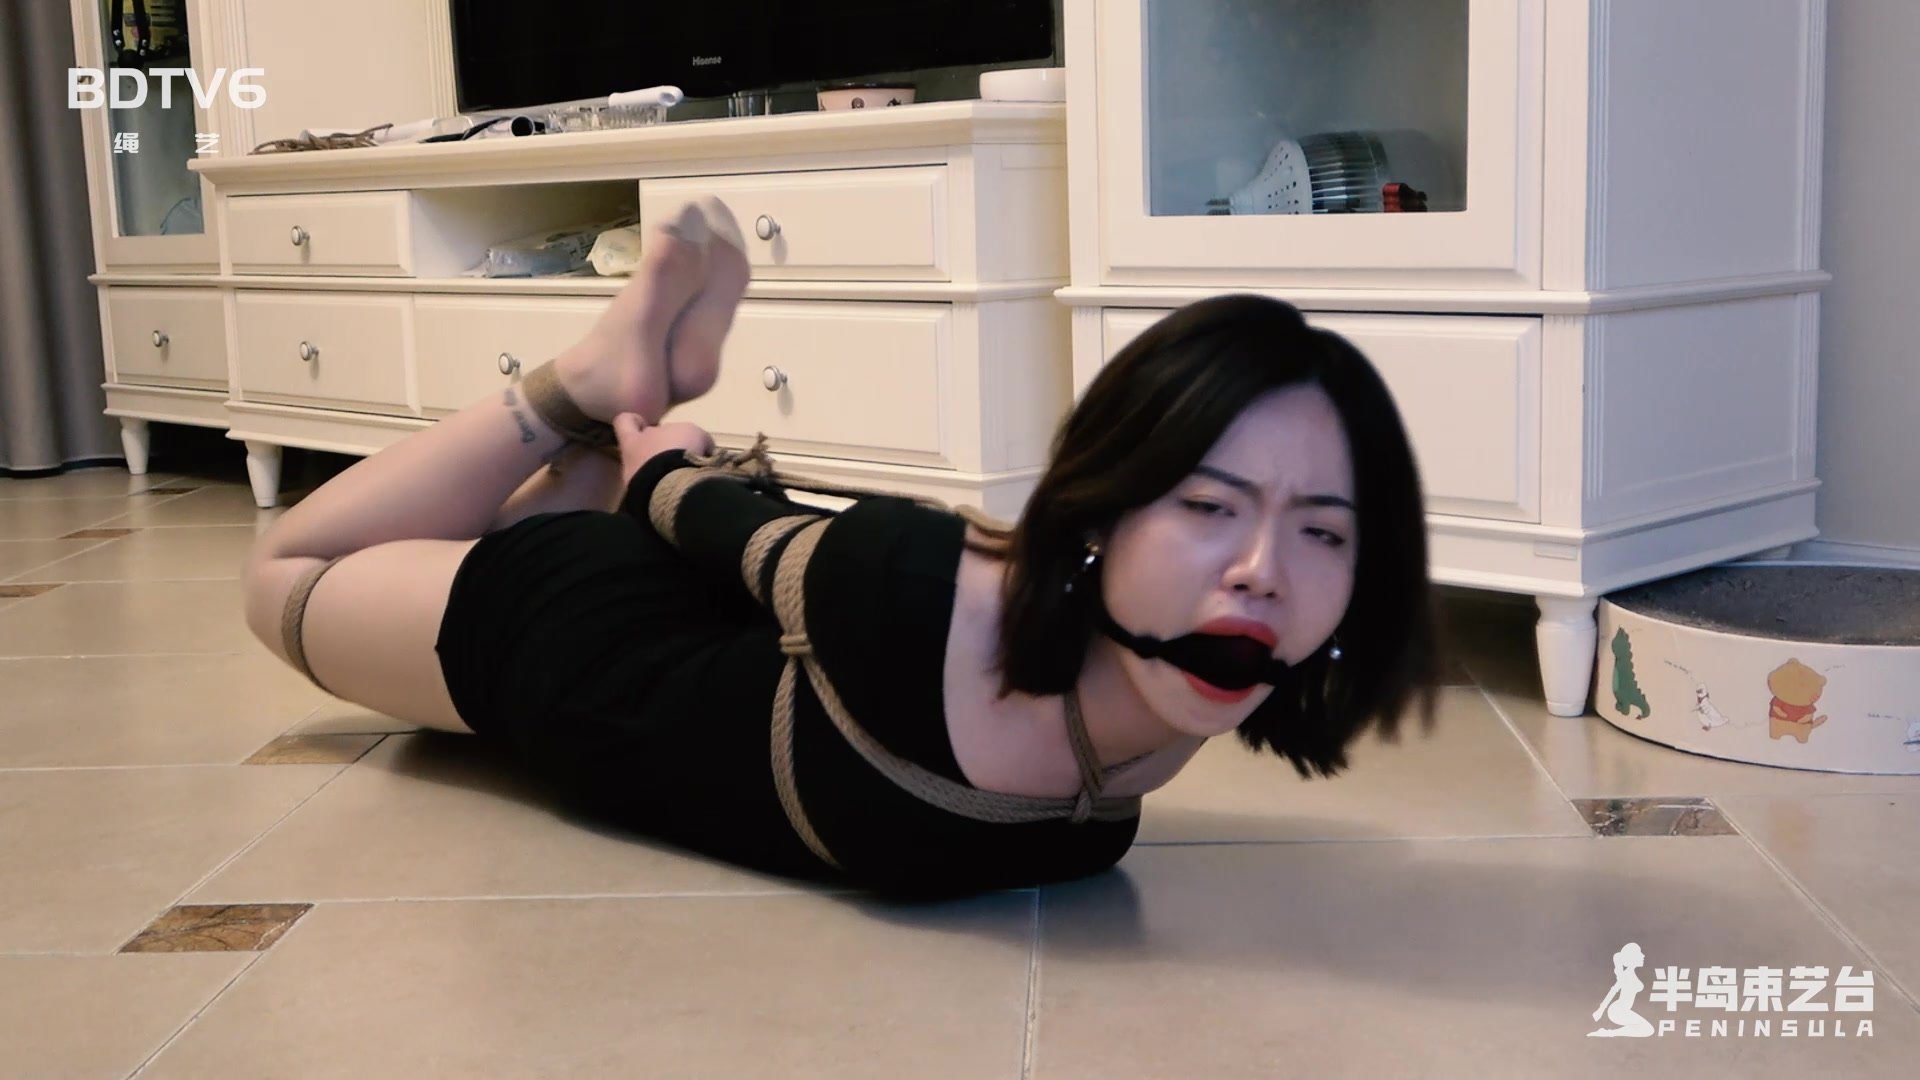 Chinese bondage video